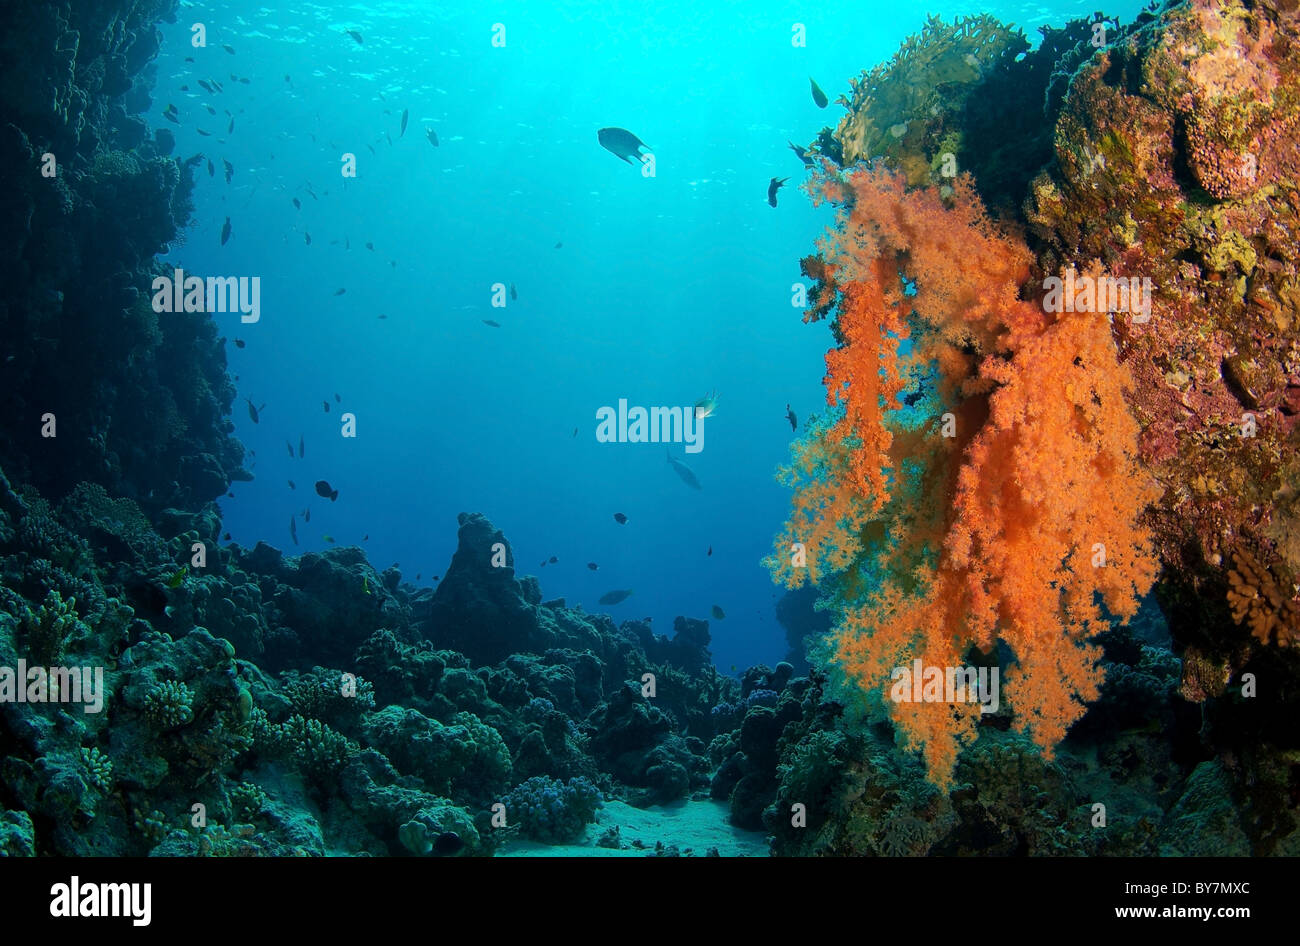 Labuan, coral blando (Layang Layang) Foto de stock